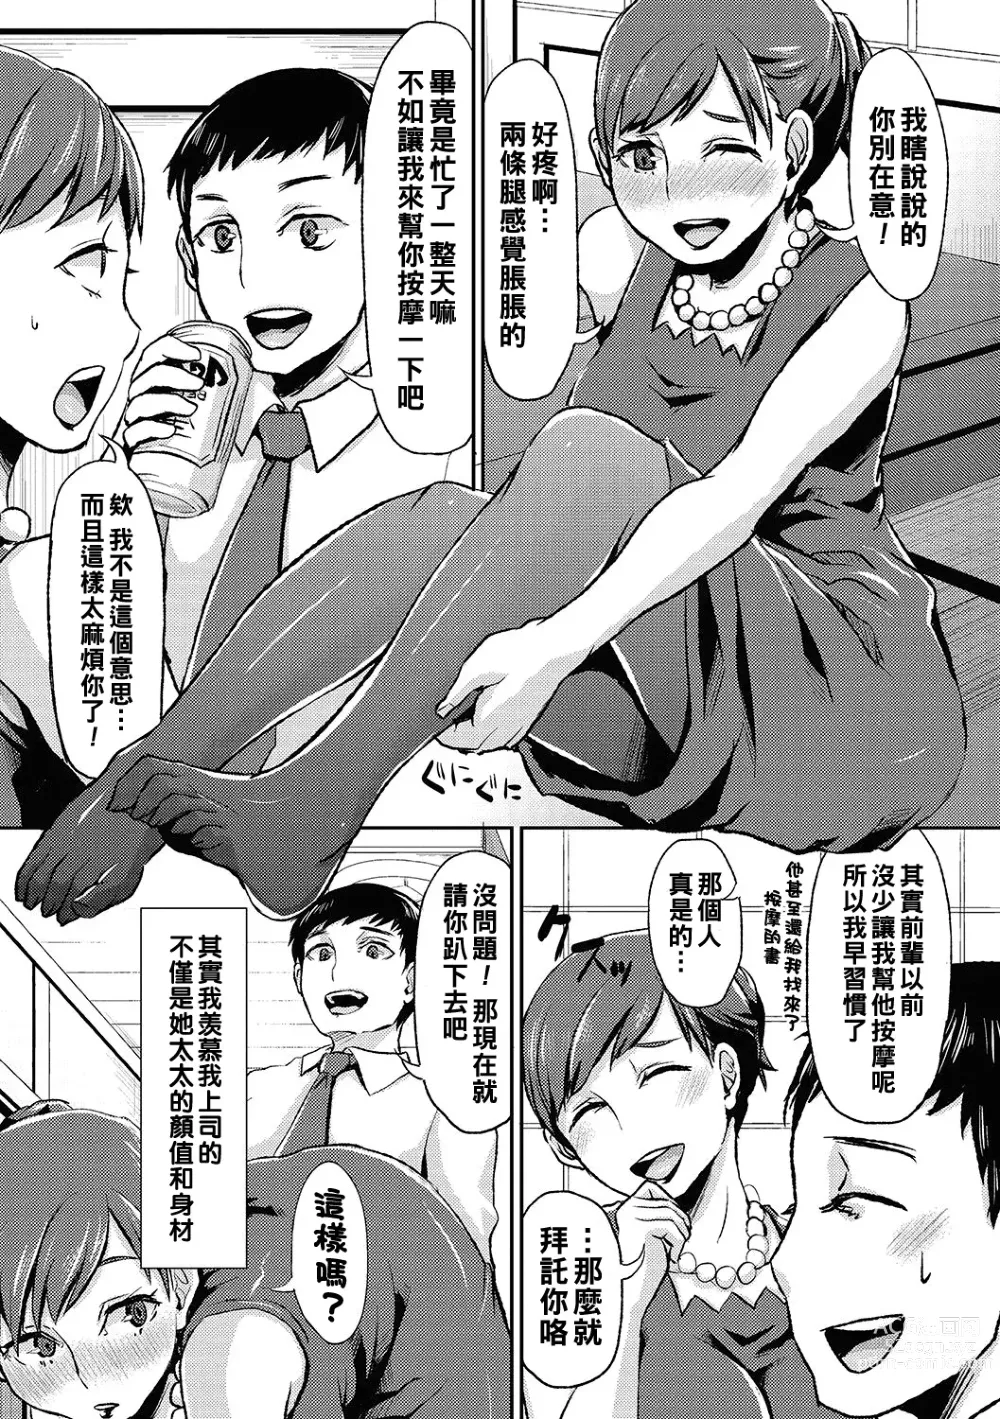 Page 5 of manga Miboujin no Stocking